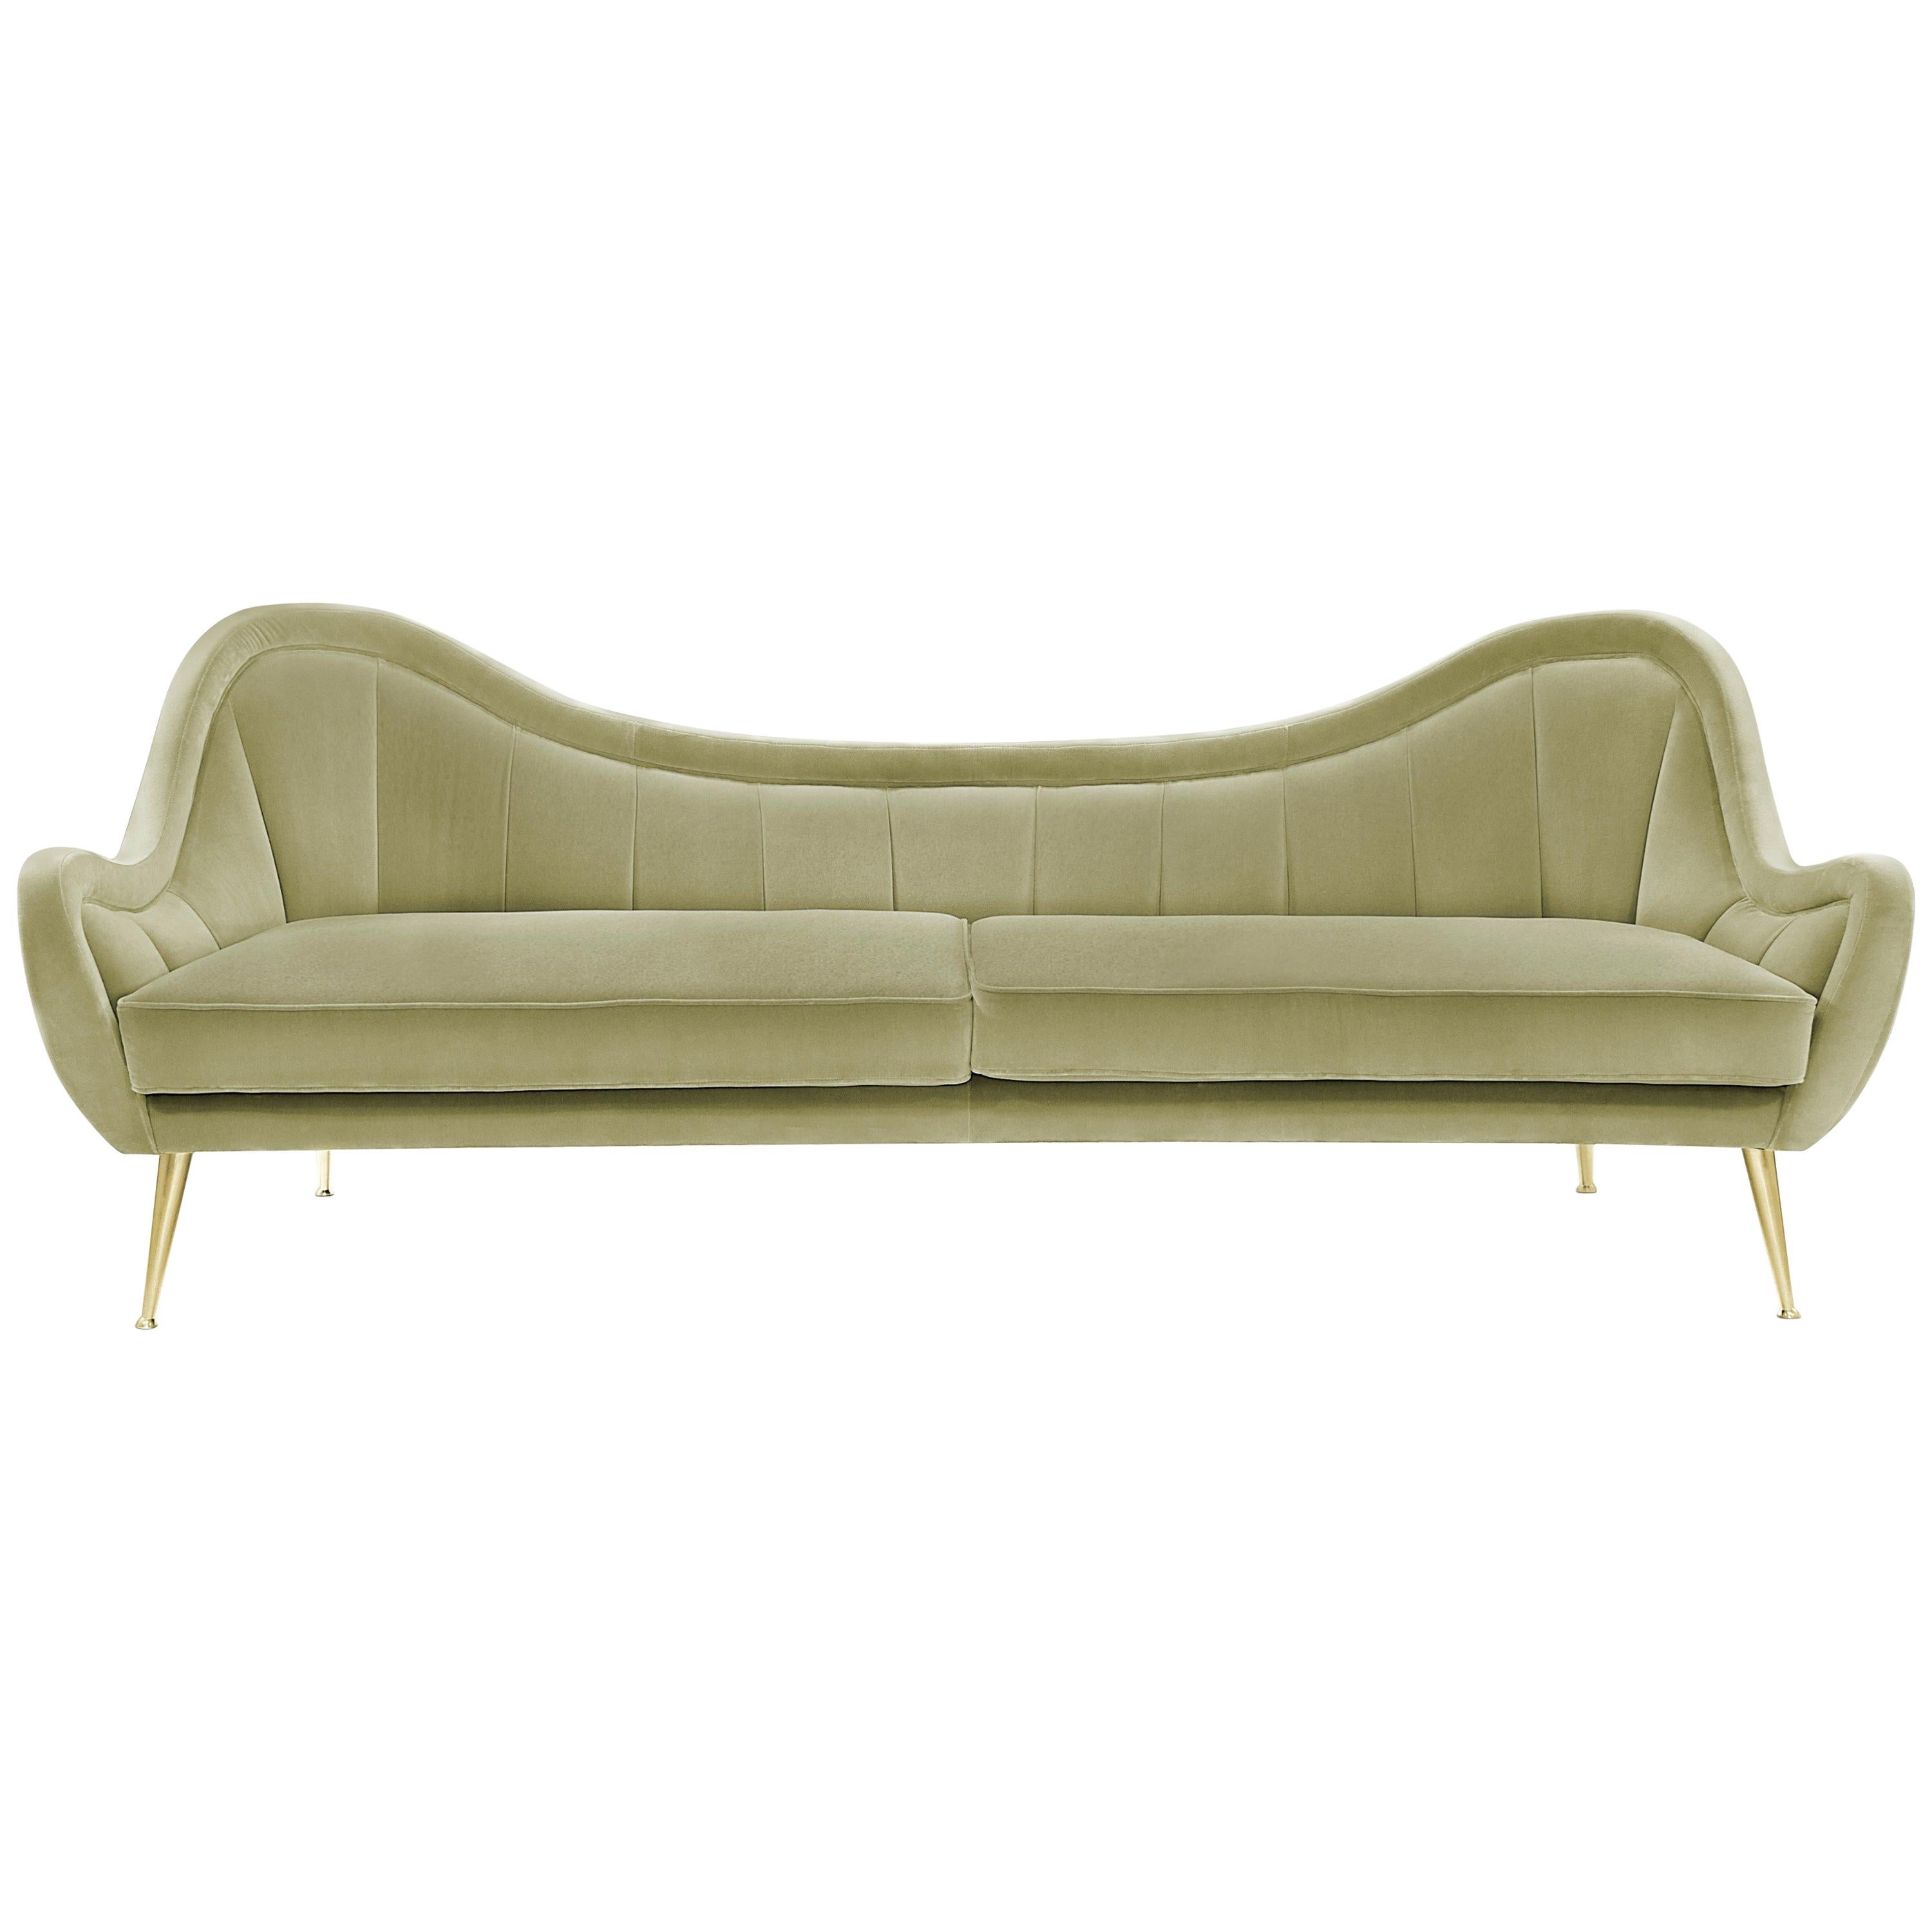 Hermes Sofa in Cotton Velvet With Gold Finish Legs by Brabbu For Sale